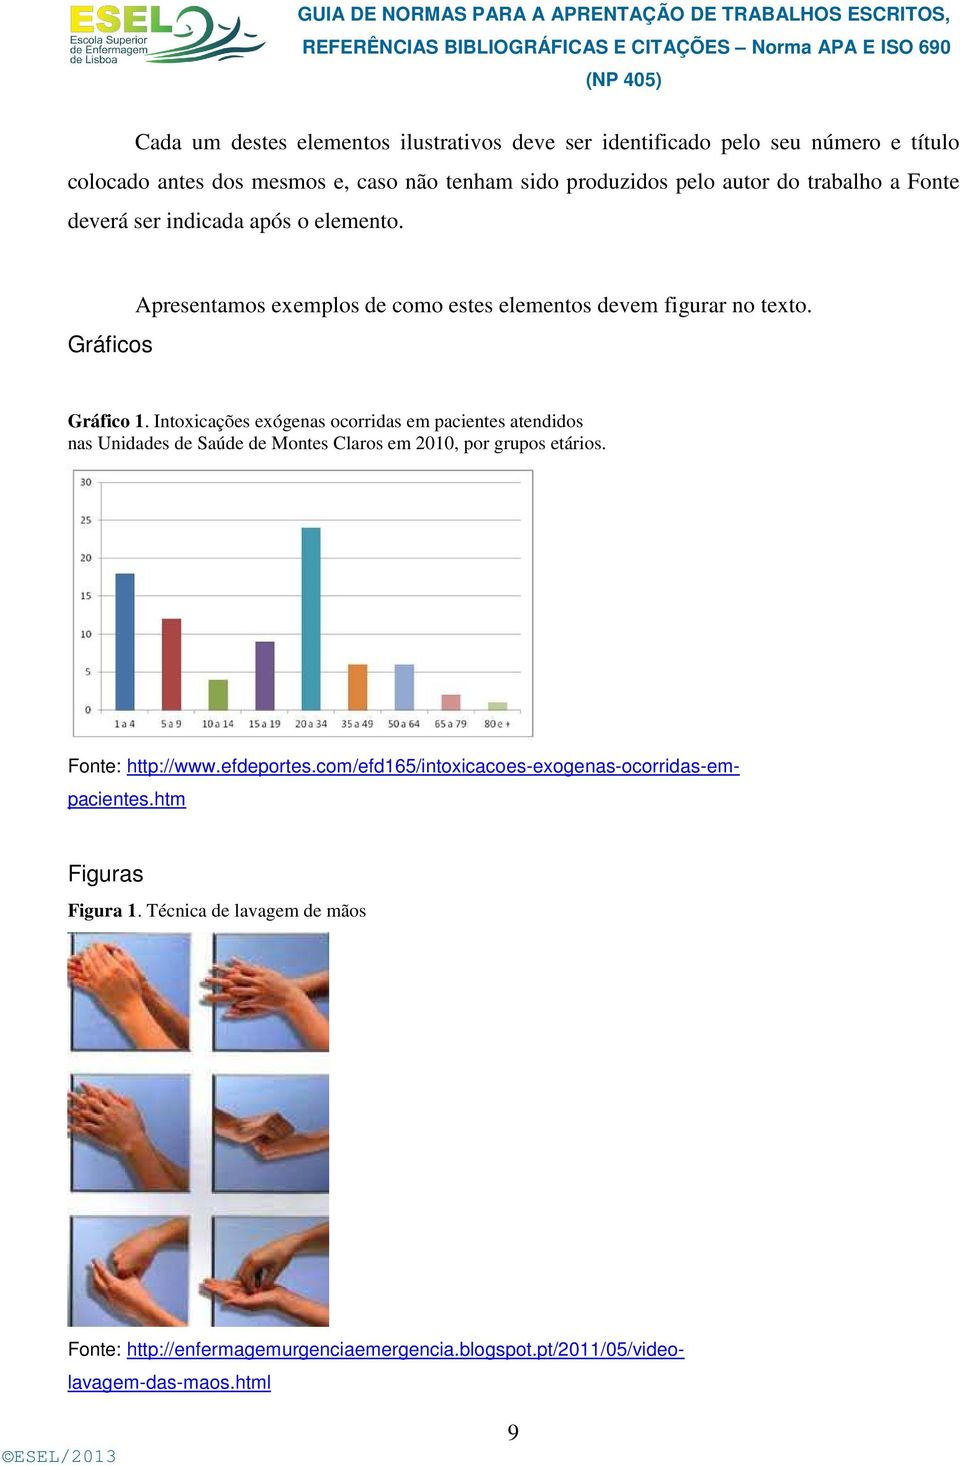 Intoxicações exógenas ocorridas em pacientes atendidos nas Unidades de Saúde de Montes Claros em 2010, por grupos etários. Fonte: http://www.efdeportes.